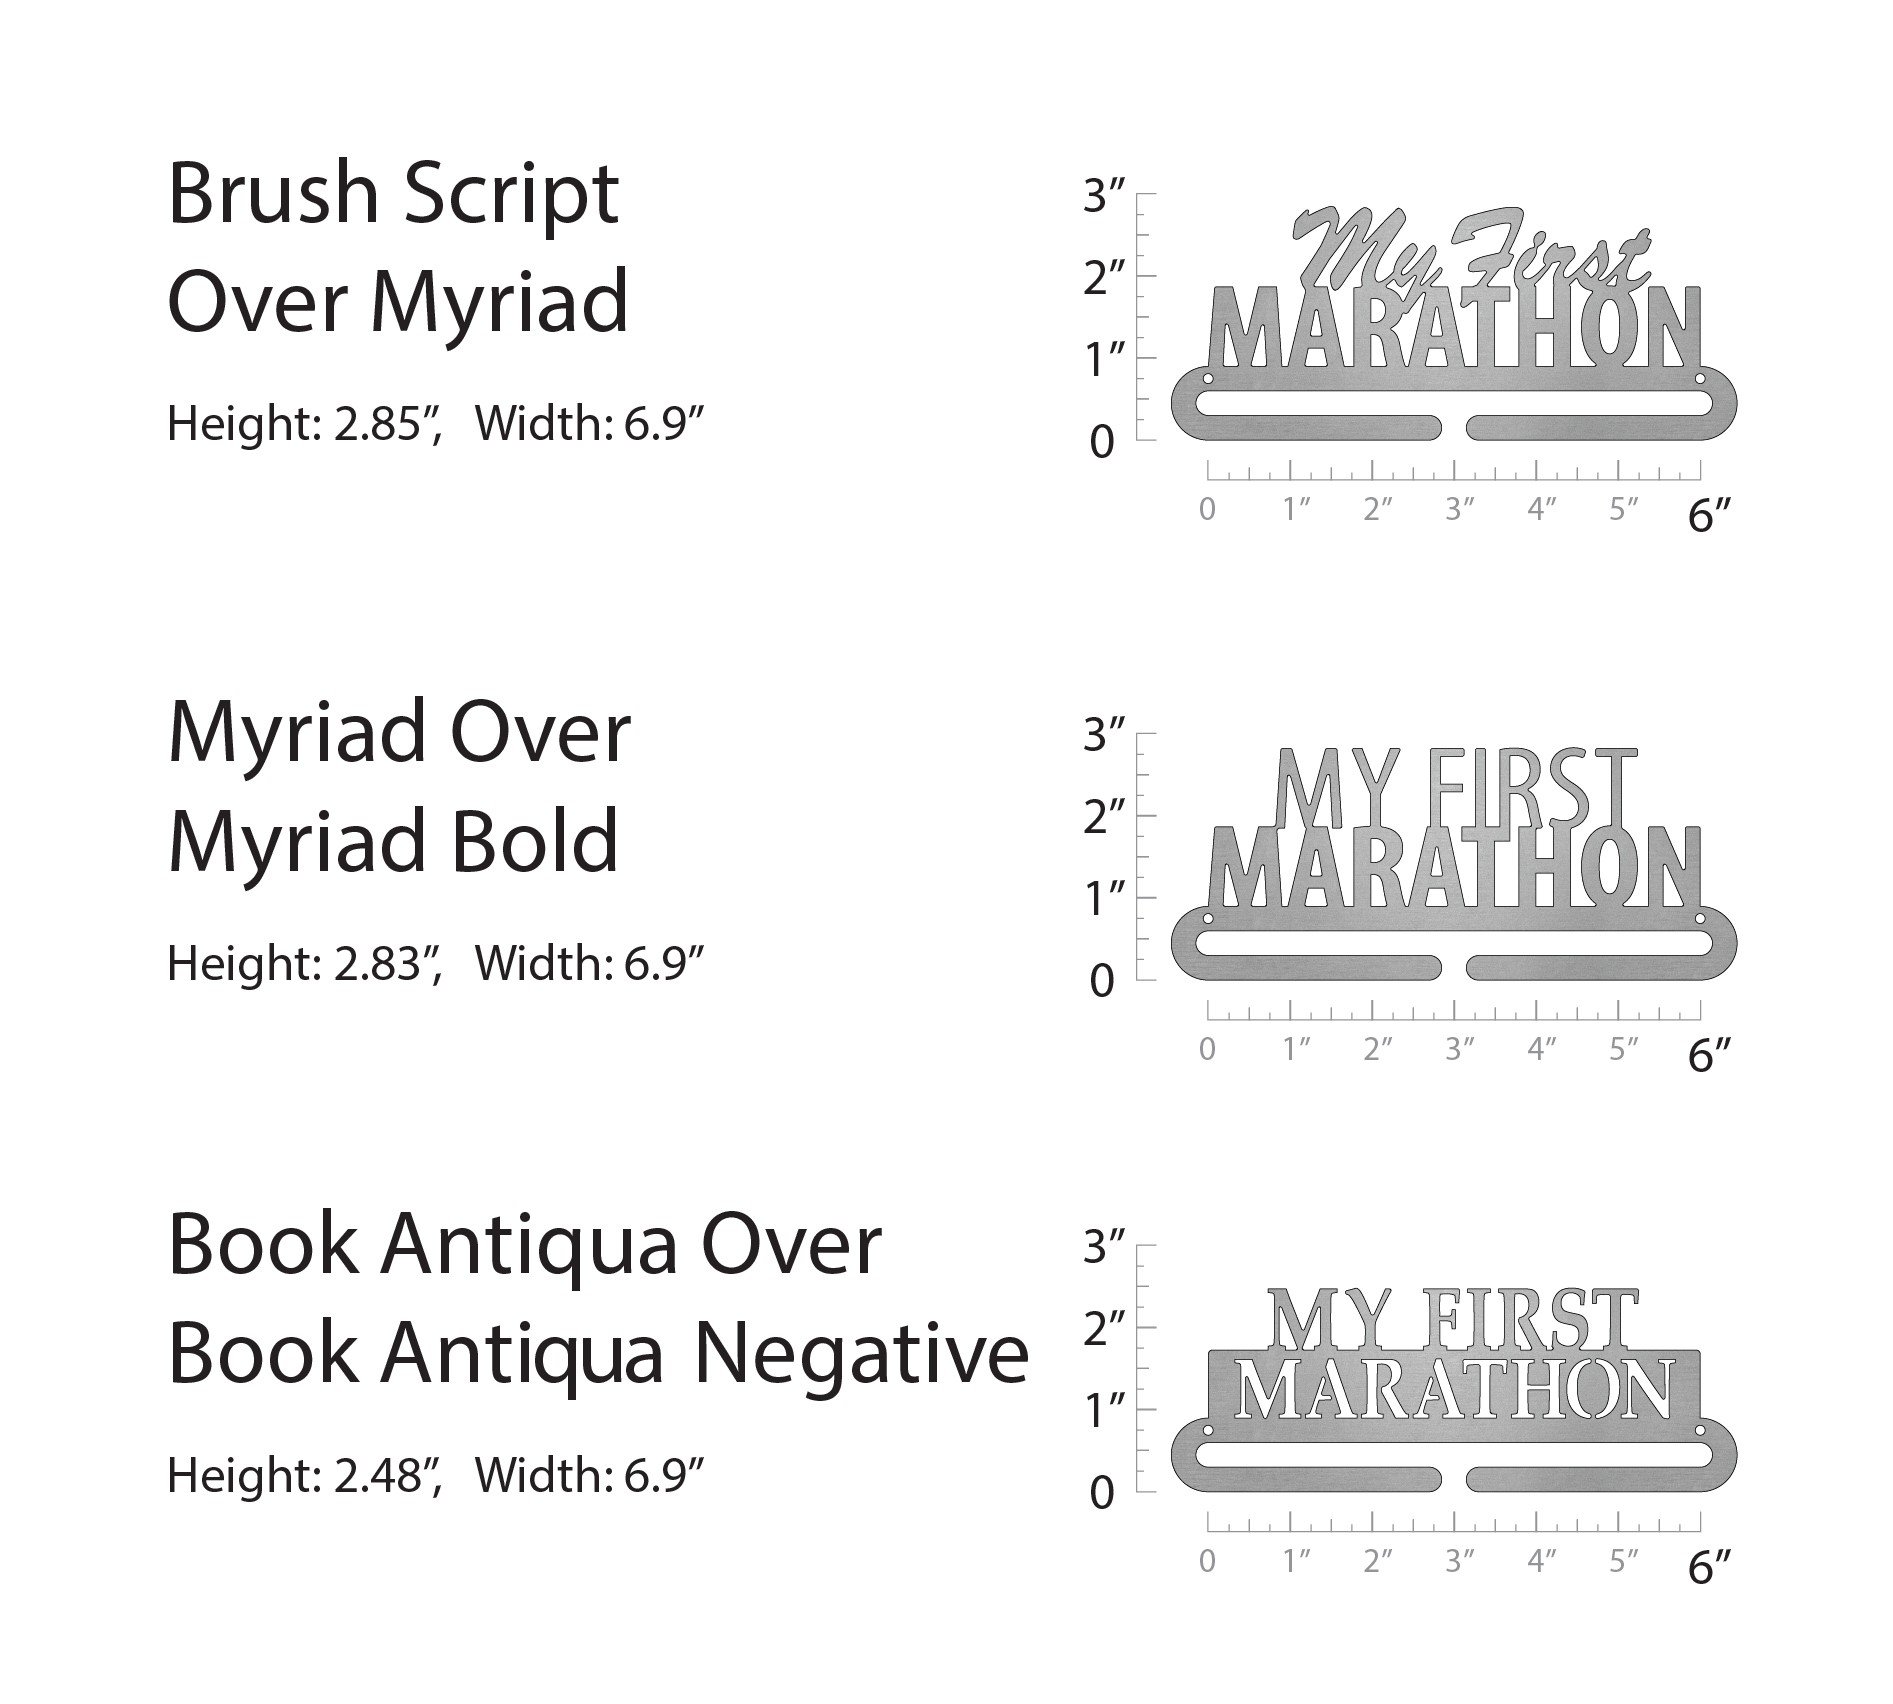 My First Marathon - Brush Script over Myriad